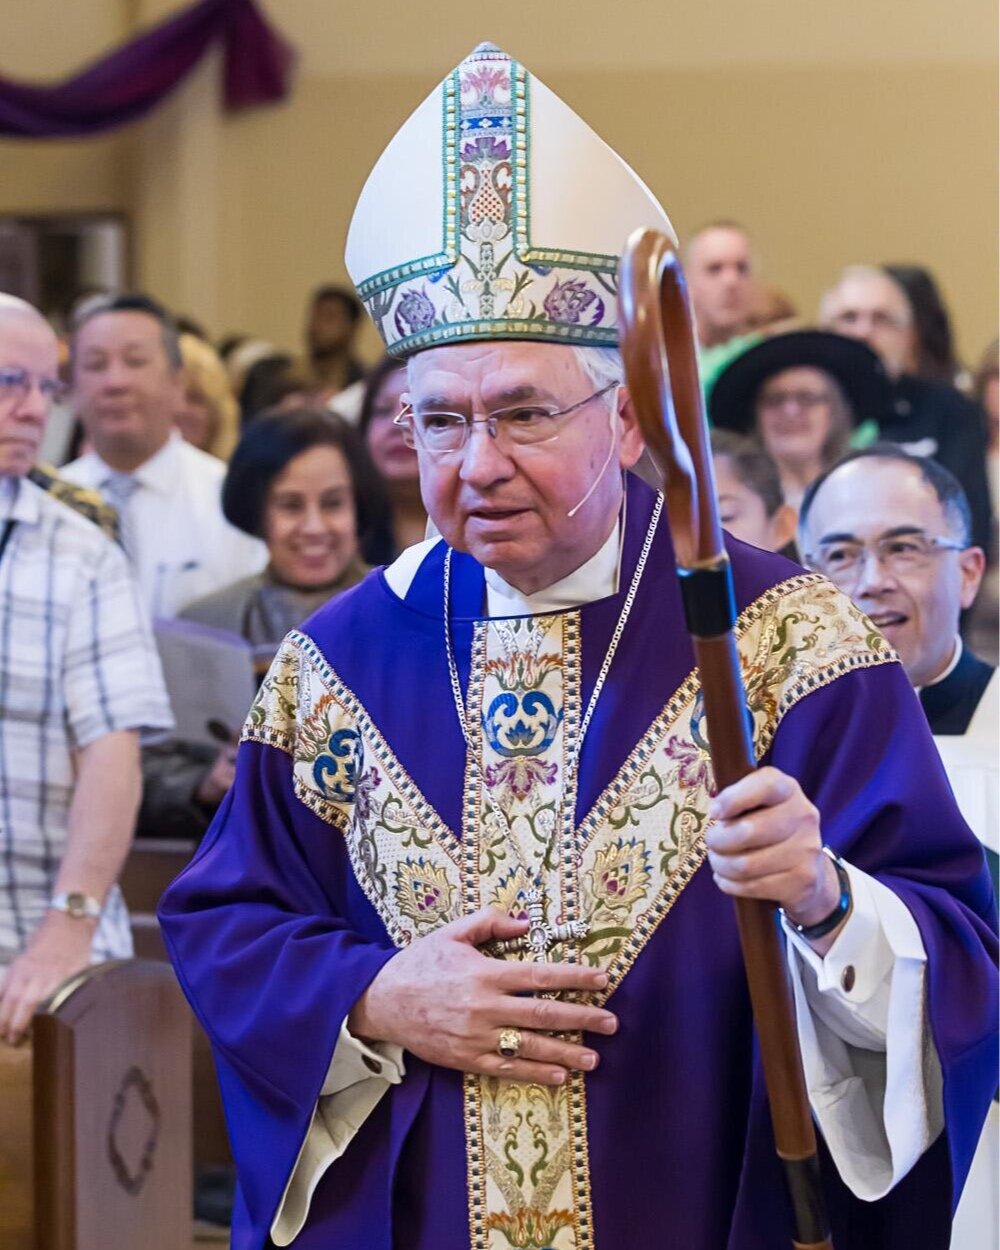 Los Angeles Archdiocese Archbishop Jose Gomez